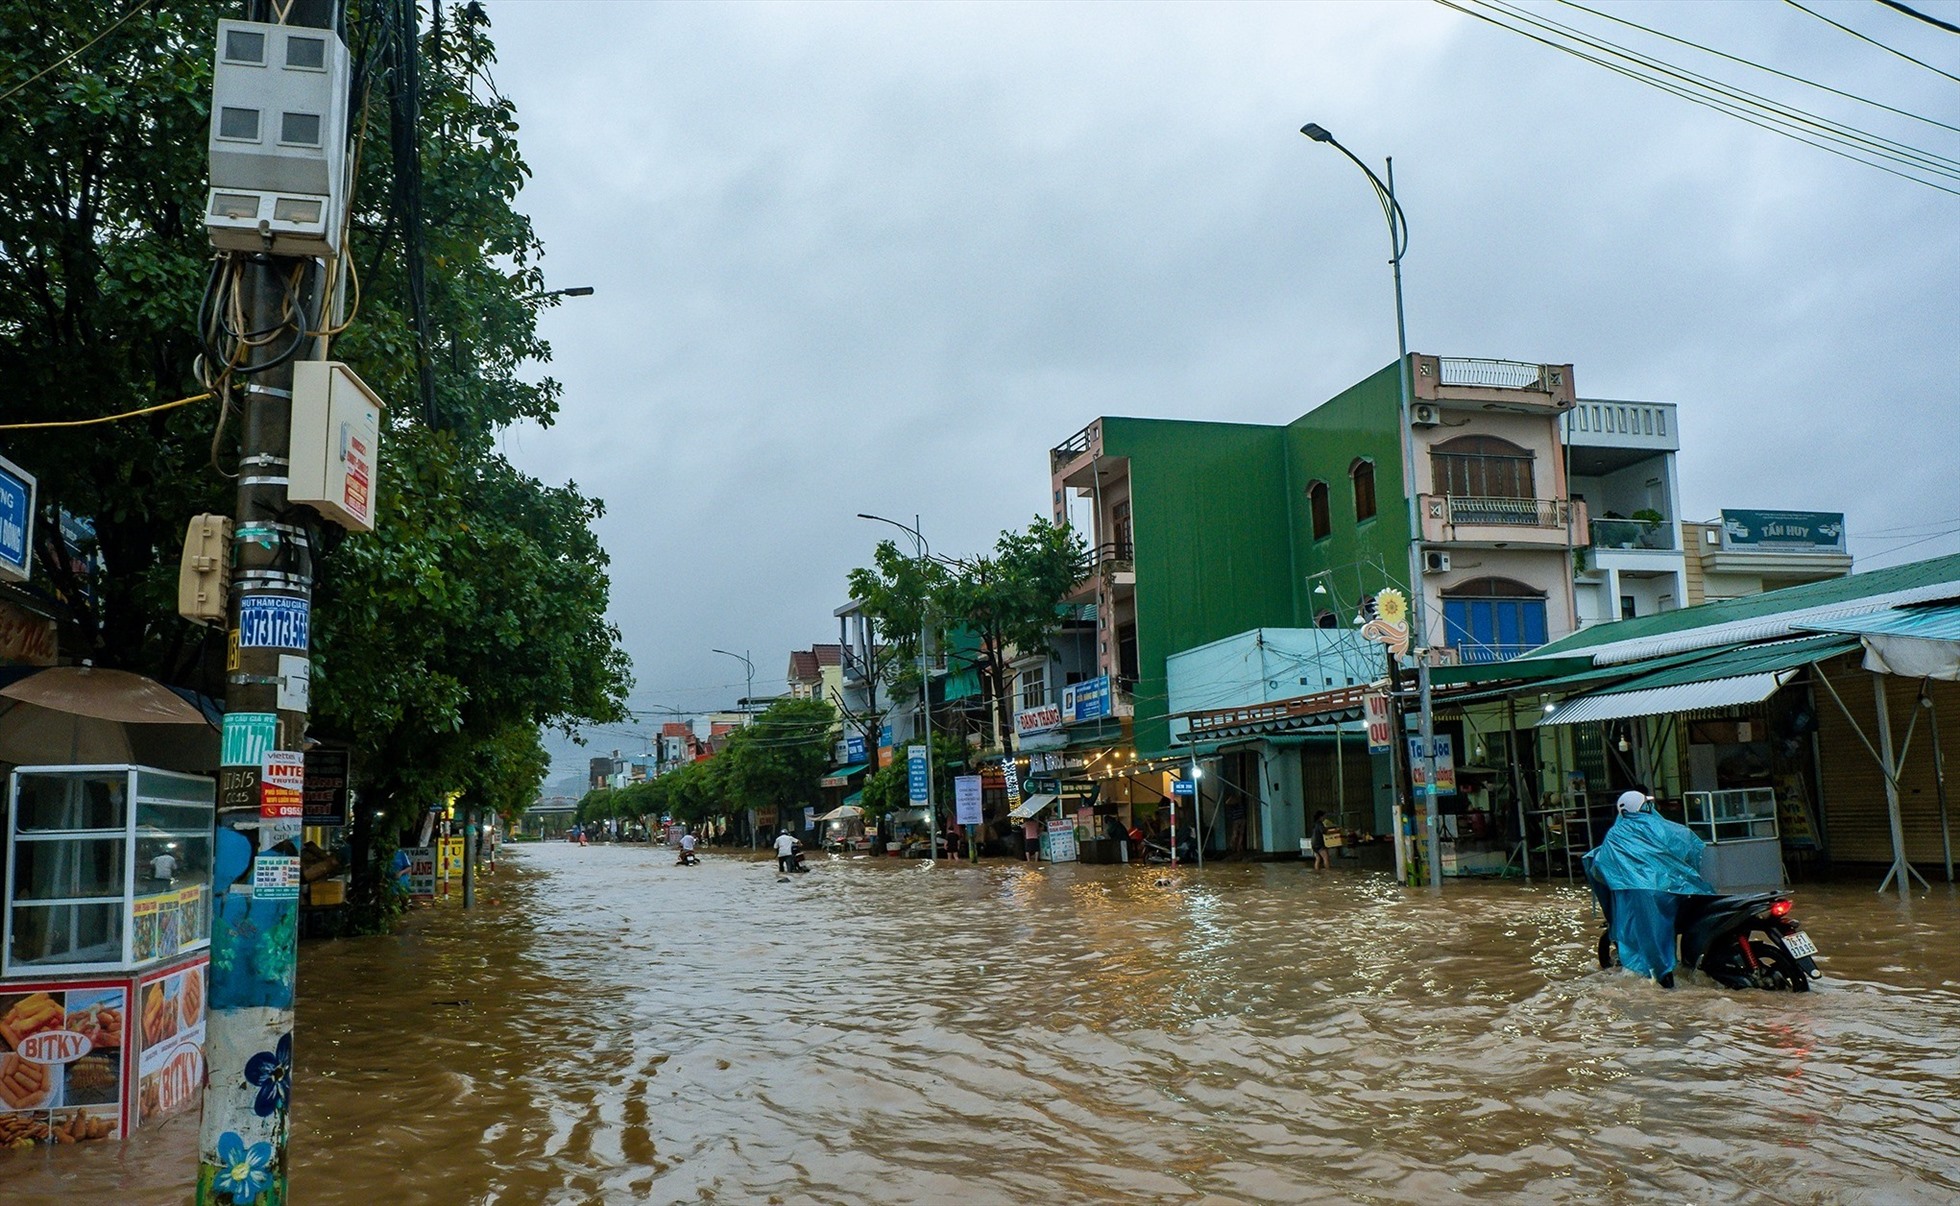 Nước ngập nhiều tuyến đường ở huyện Nghĩa Hành. Ảnh: Nguyễn Nhật Tân.